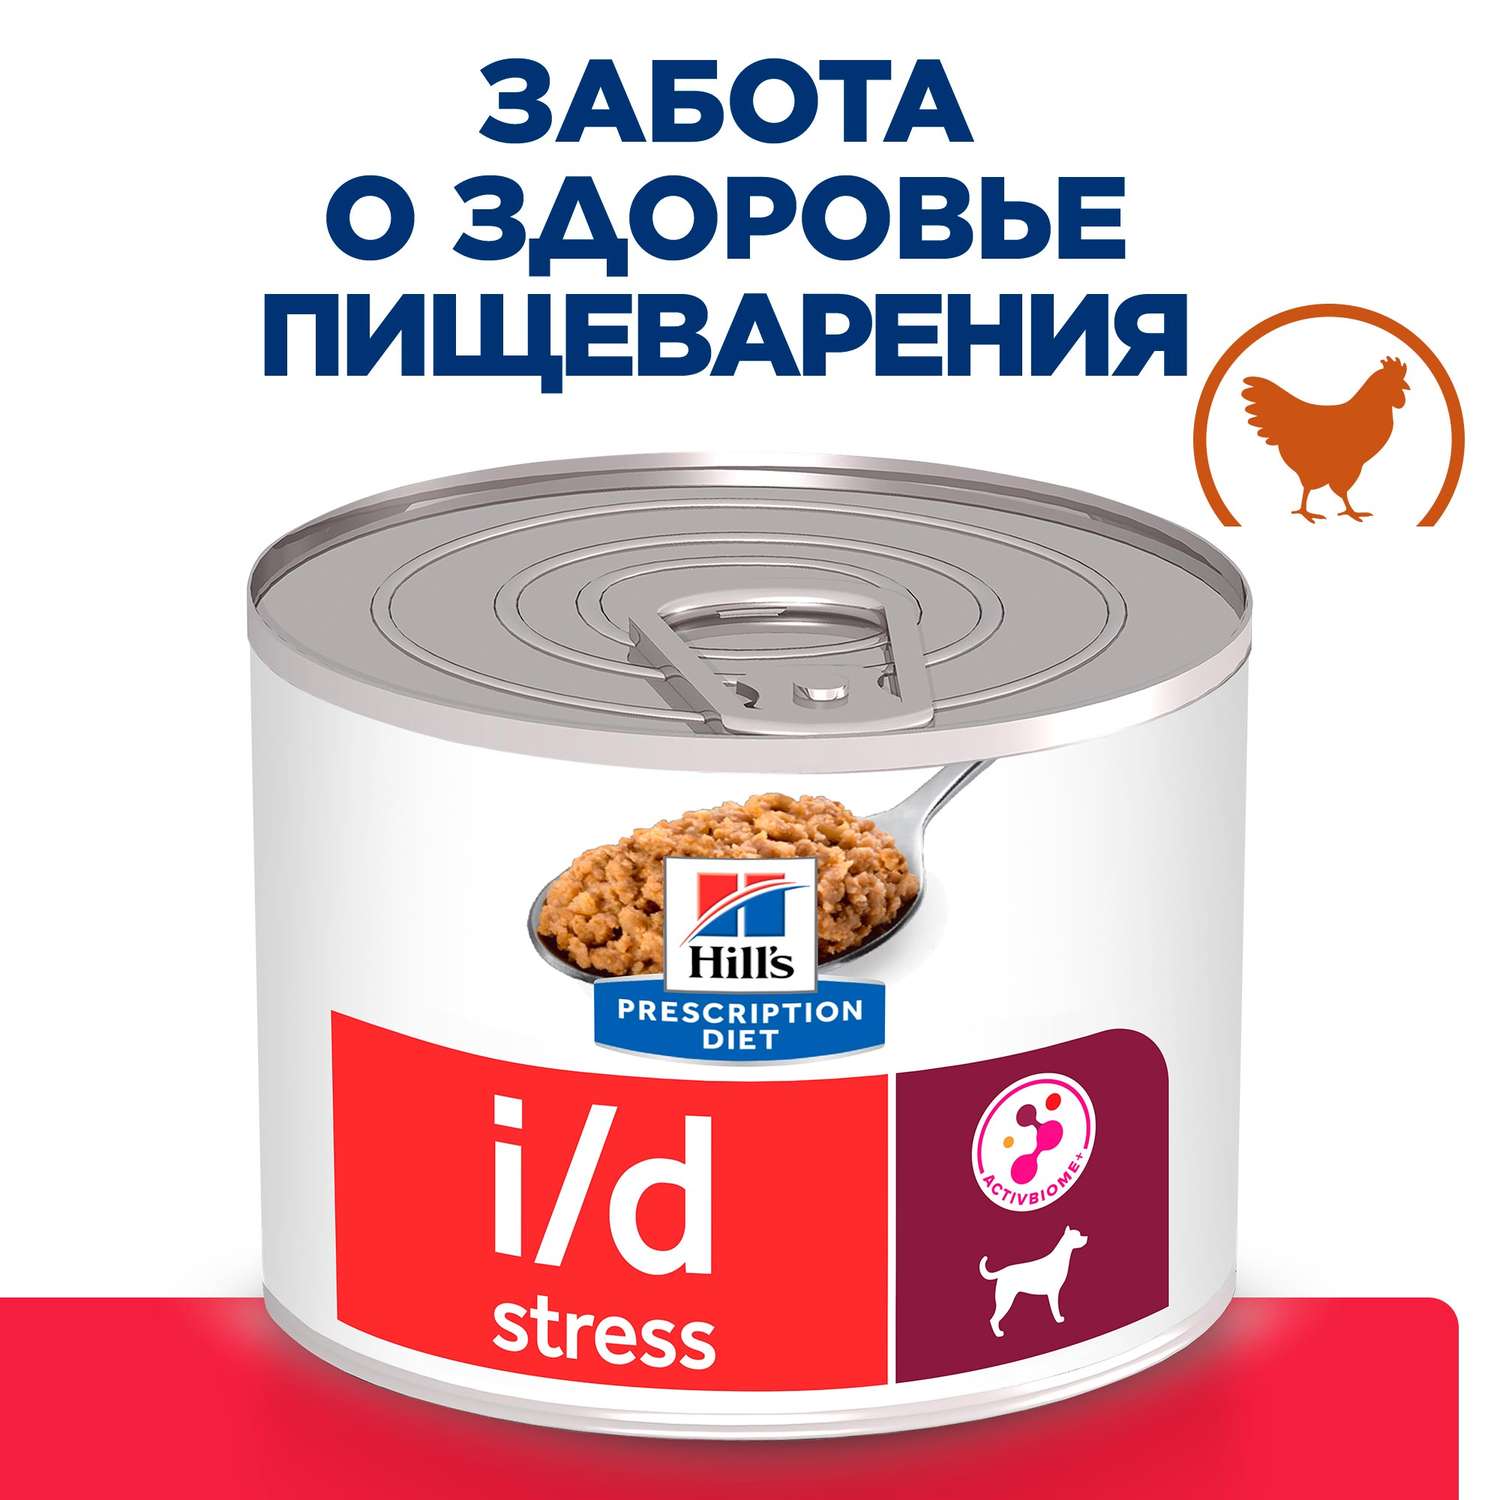 Корм для собак Hills 200г Prescription Diet диетический i/d Stress Mini для мелких пород при расстройствах пищеварения курица жб - фото 2